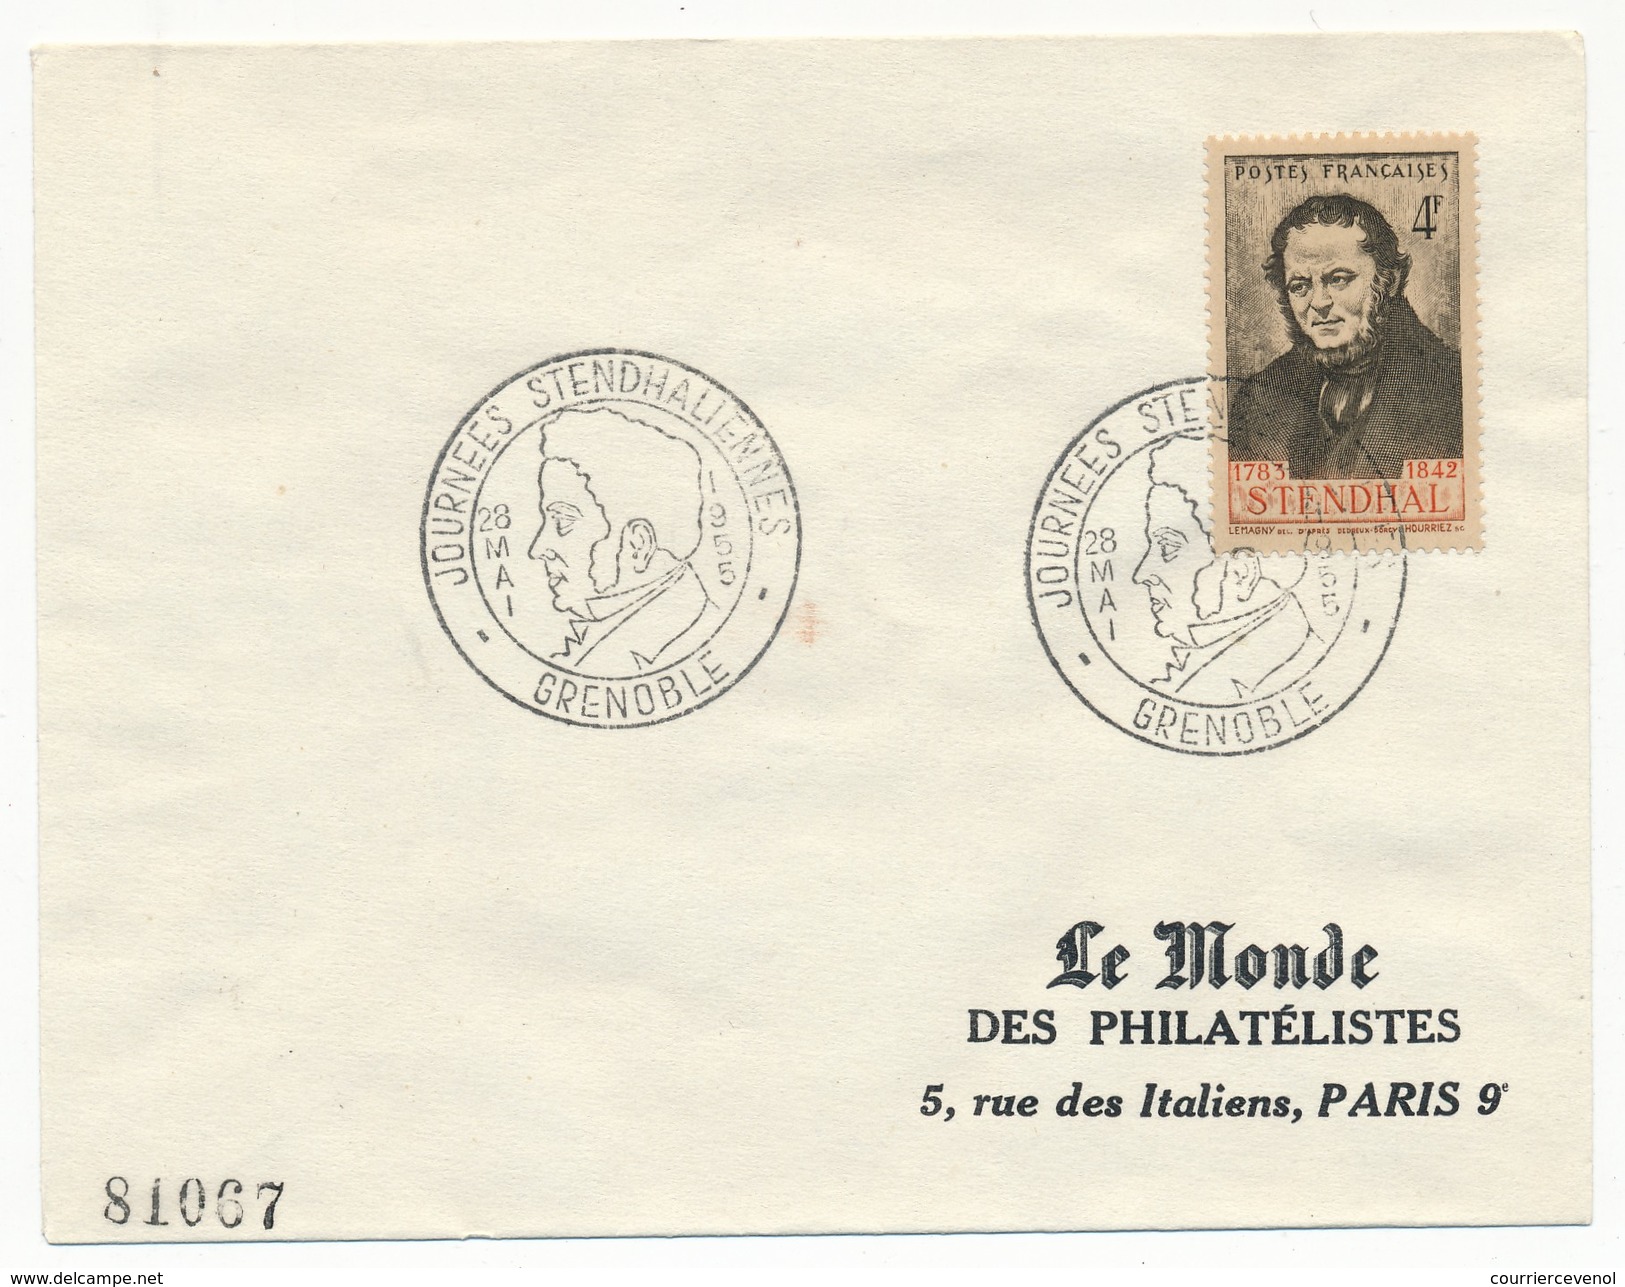 FRANCE - Enveloppe - Cachet Temporaire "Journées Stendhaliennes" GRENOBLE 28 Mai 1955 - Schriftsteller